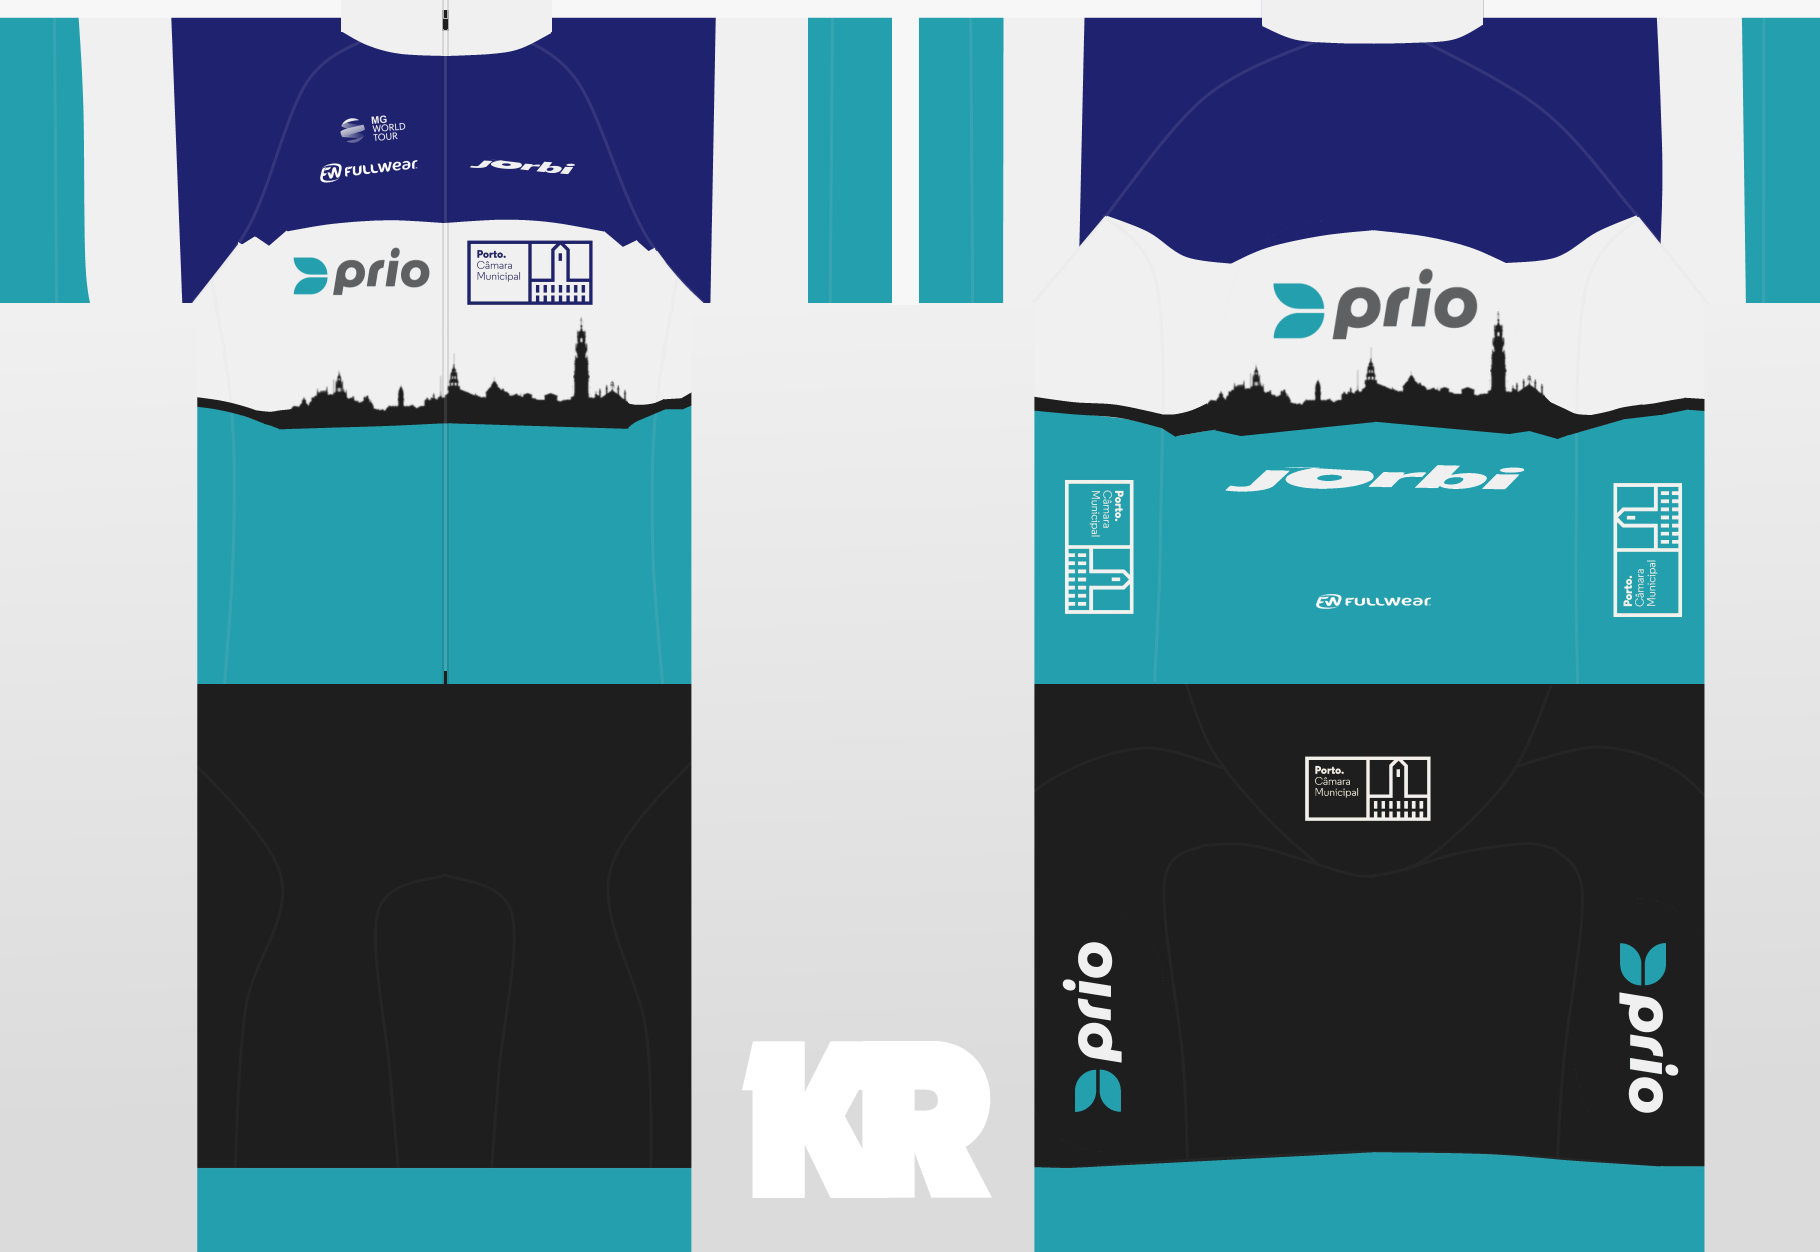 Main Shirt for Porto - Prio